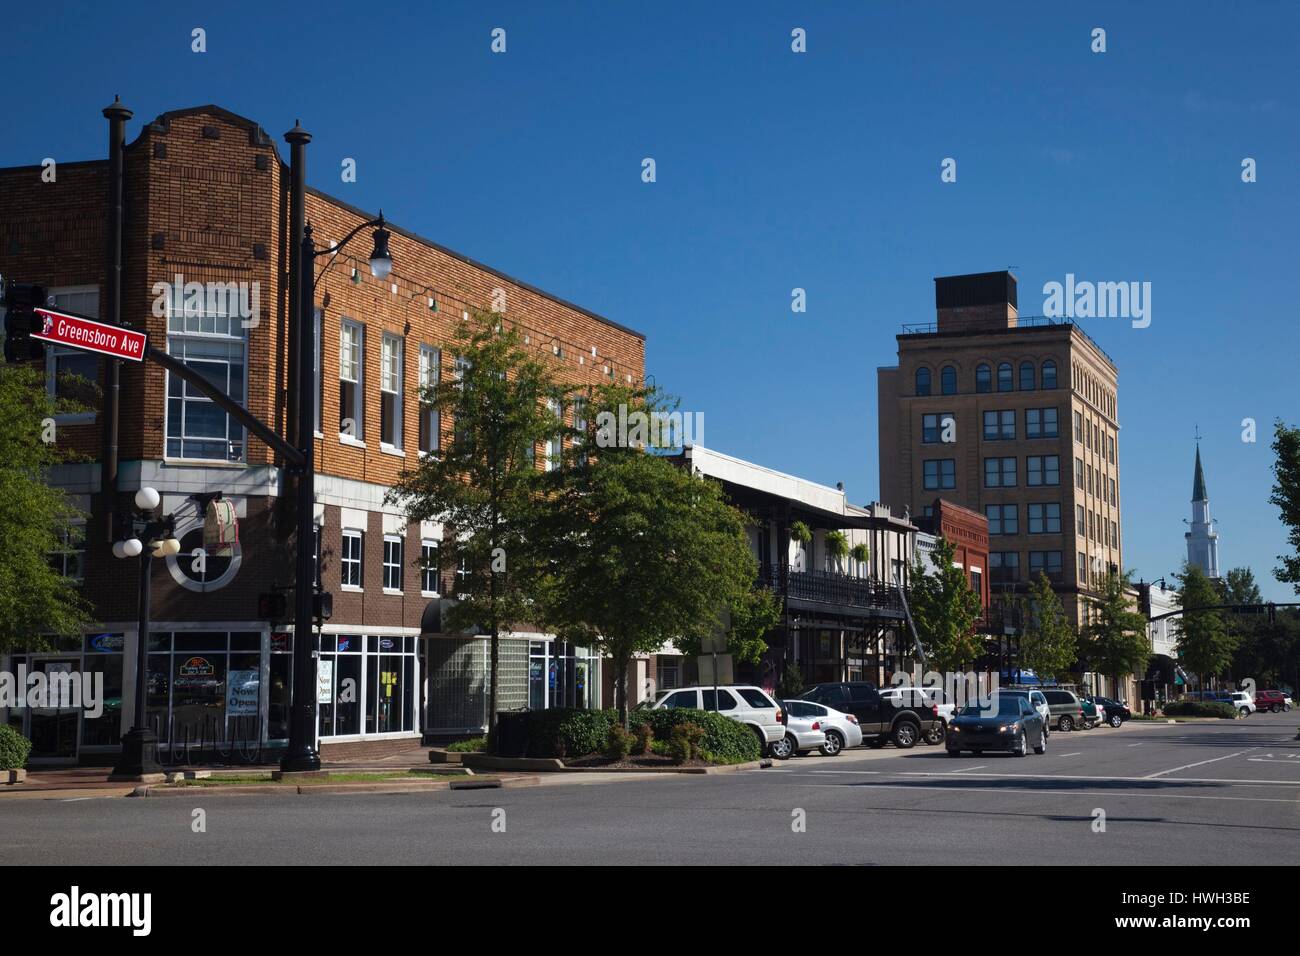 United States, Alabama, Tuscaloosa, Greensboro Avenue, also known as 24th Avenue Stock Photo